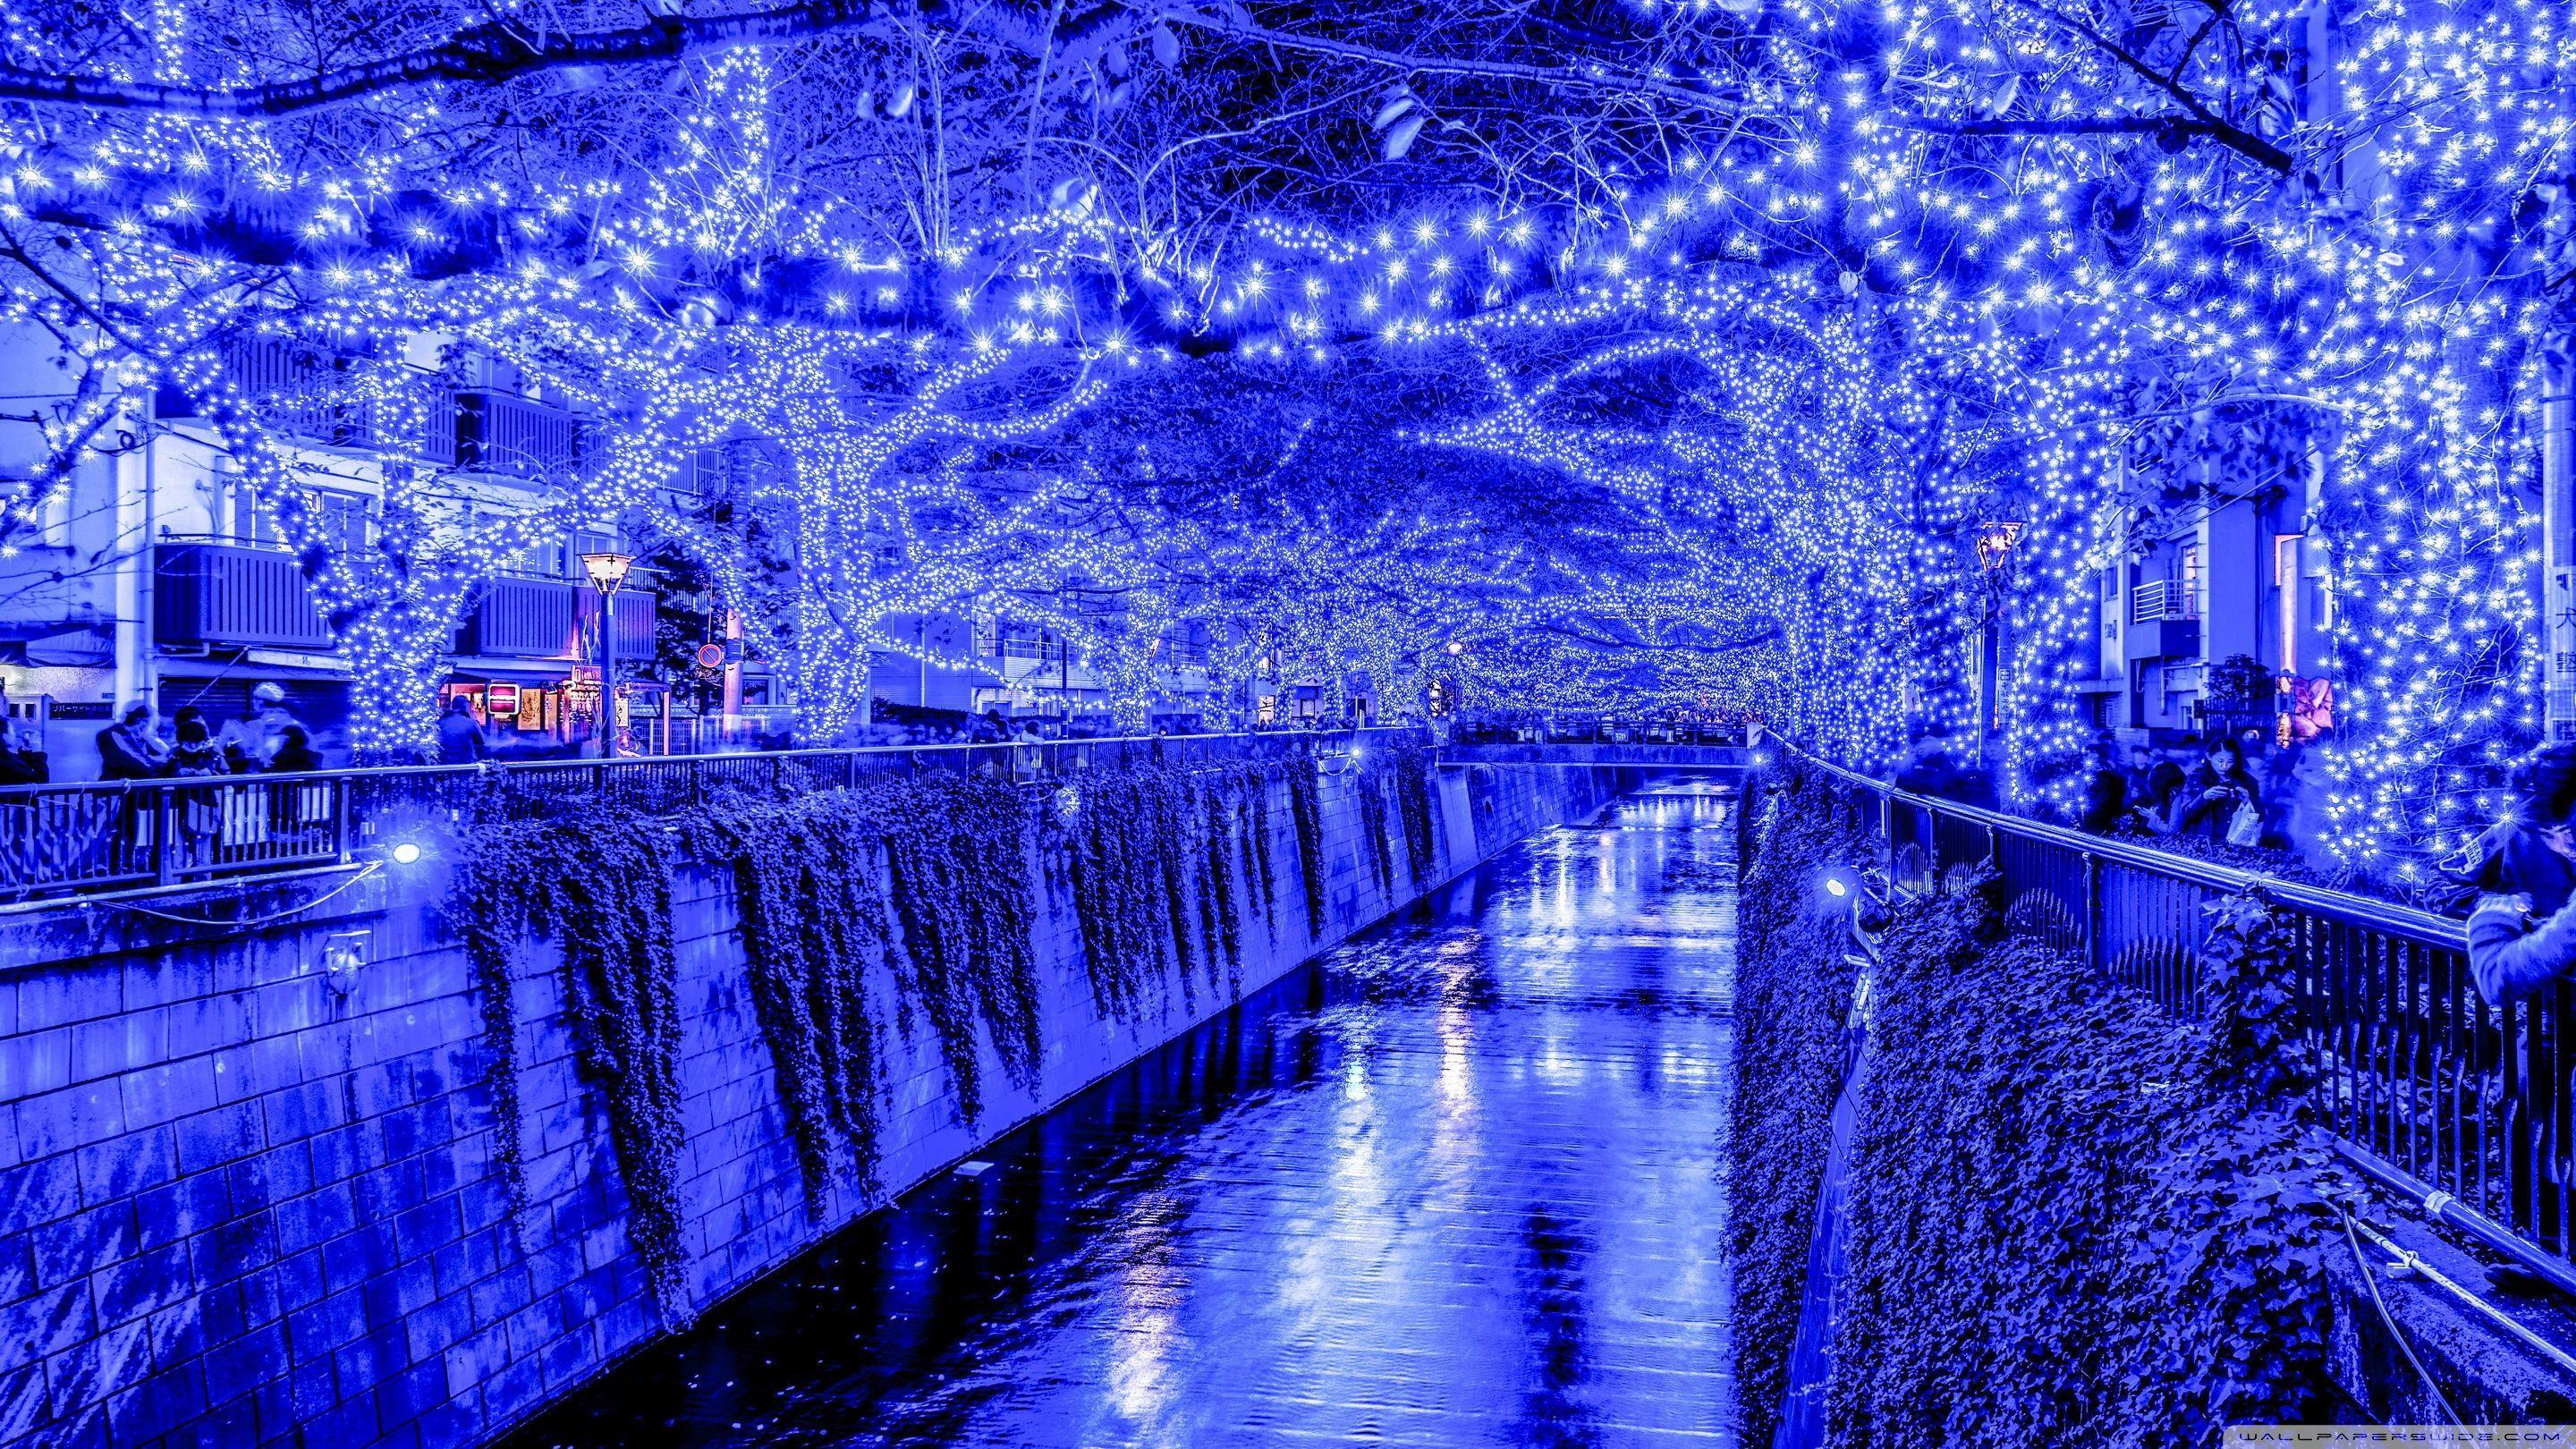 Phông nền Giáng sinh Tokyo: Hãy cùng chúng tôi khám phá Tokyo với phông nền Giáng sinh độc đáo và đẹp mắt. Xoá tan tràn tran của cuộc sống thường nhật và tận hưởng không khí ấm áp và vui tươi của mùa lễ hội tại thành phố sôi động này cùng chúng tôi.